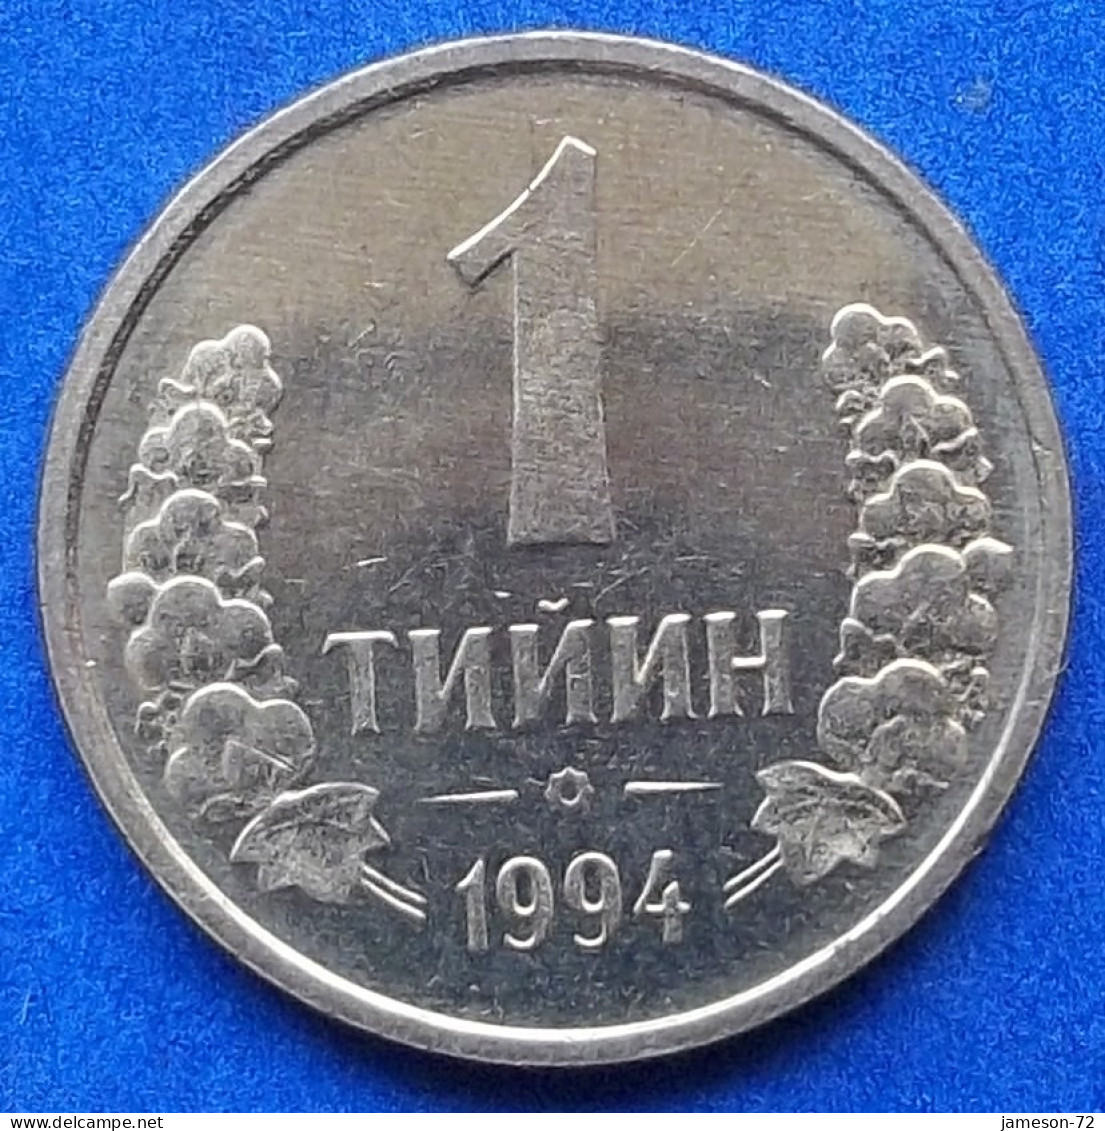 UZBEKISTAN - 1 Tiyin 1994 KM# 1 Independent Republic (1991) - Edelweiss Coins - Uzbekistan